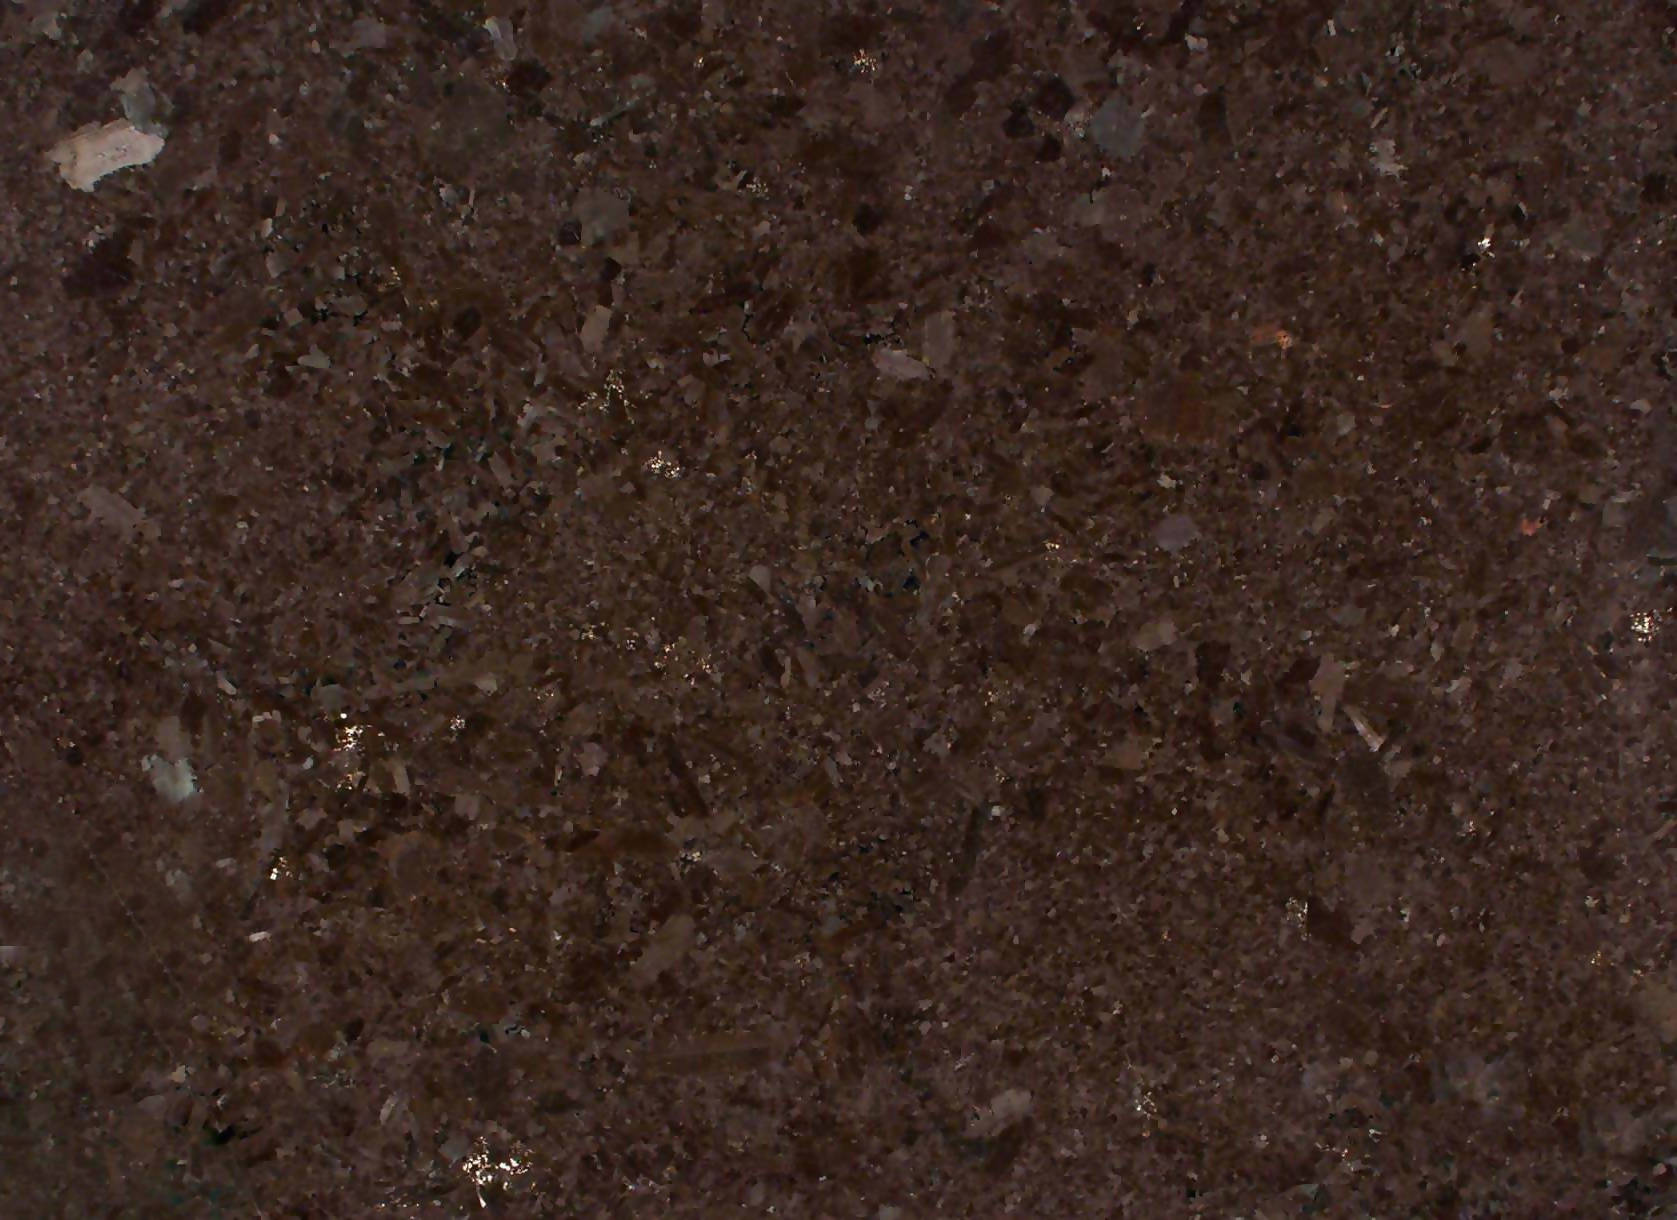 ANTIQUE BROWN GRANITE,Granite,Work-Tops,www.work-tops.com